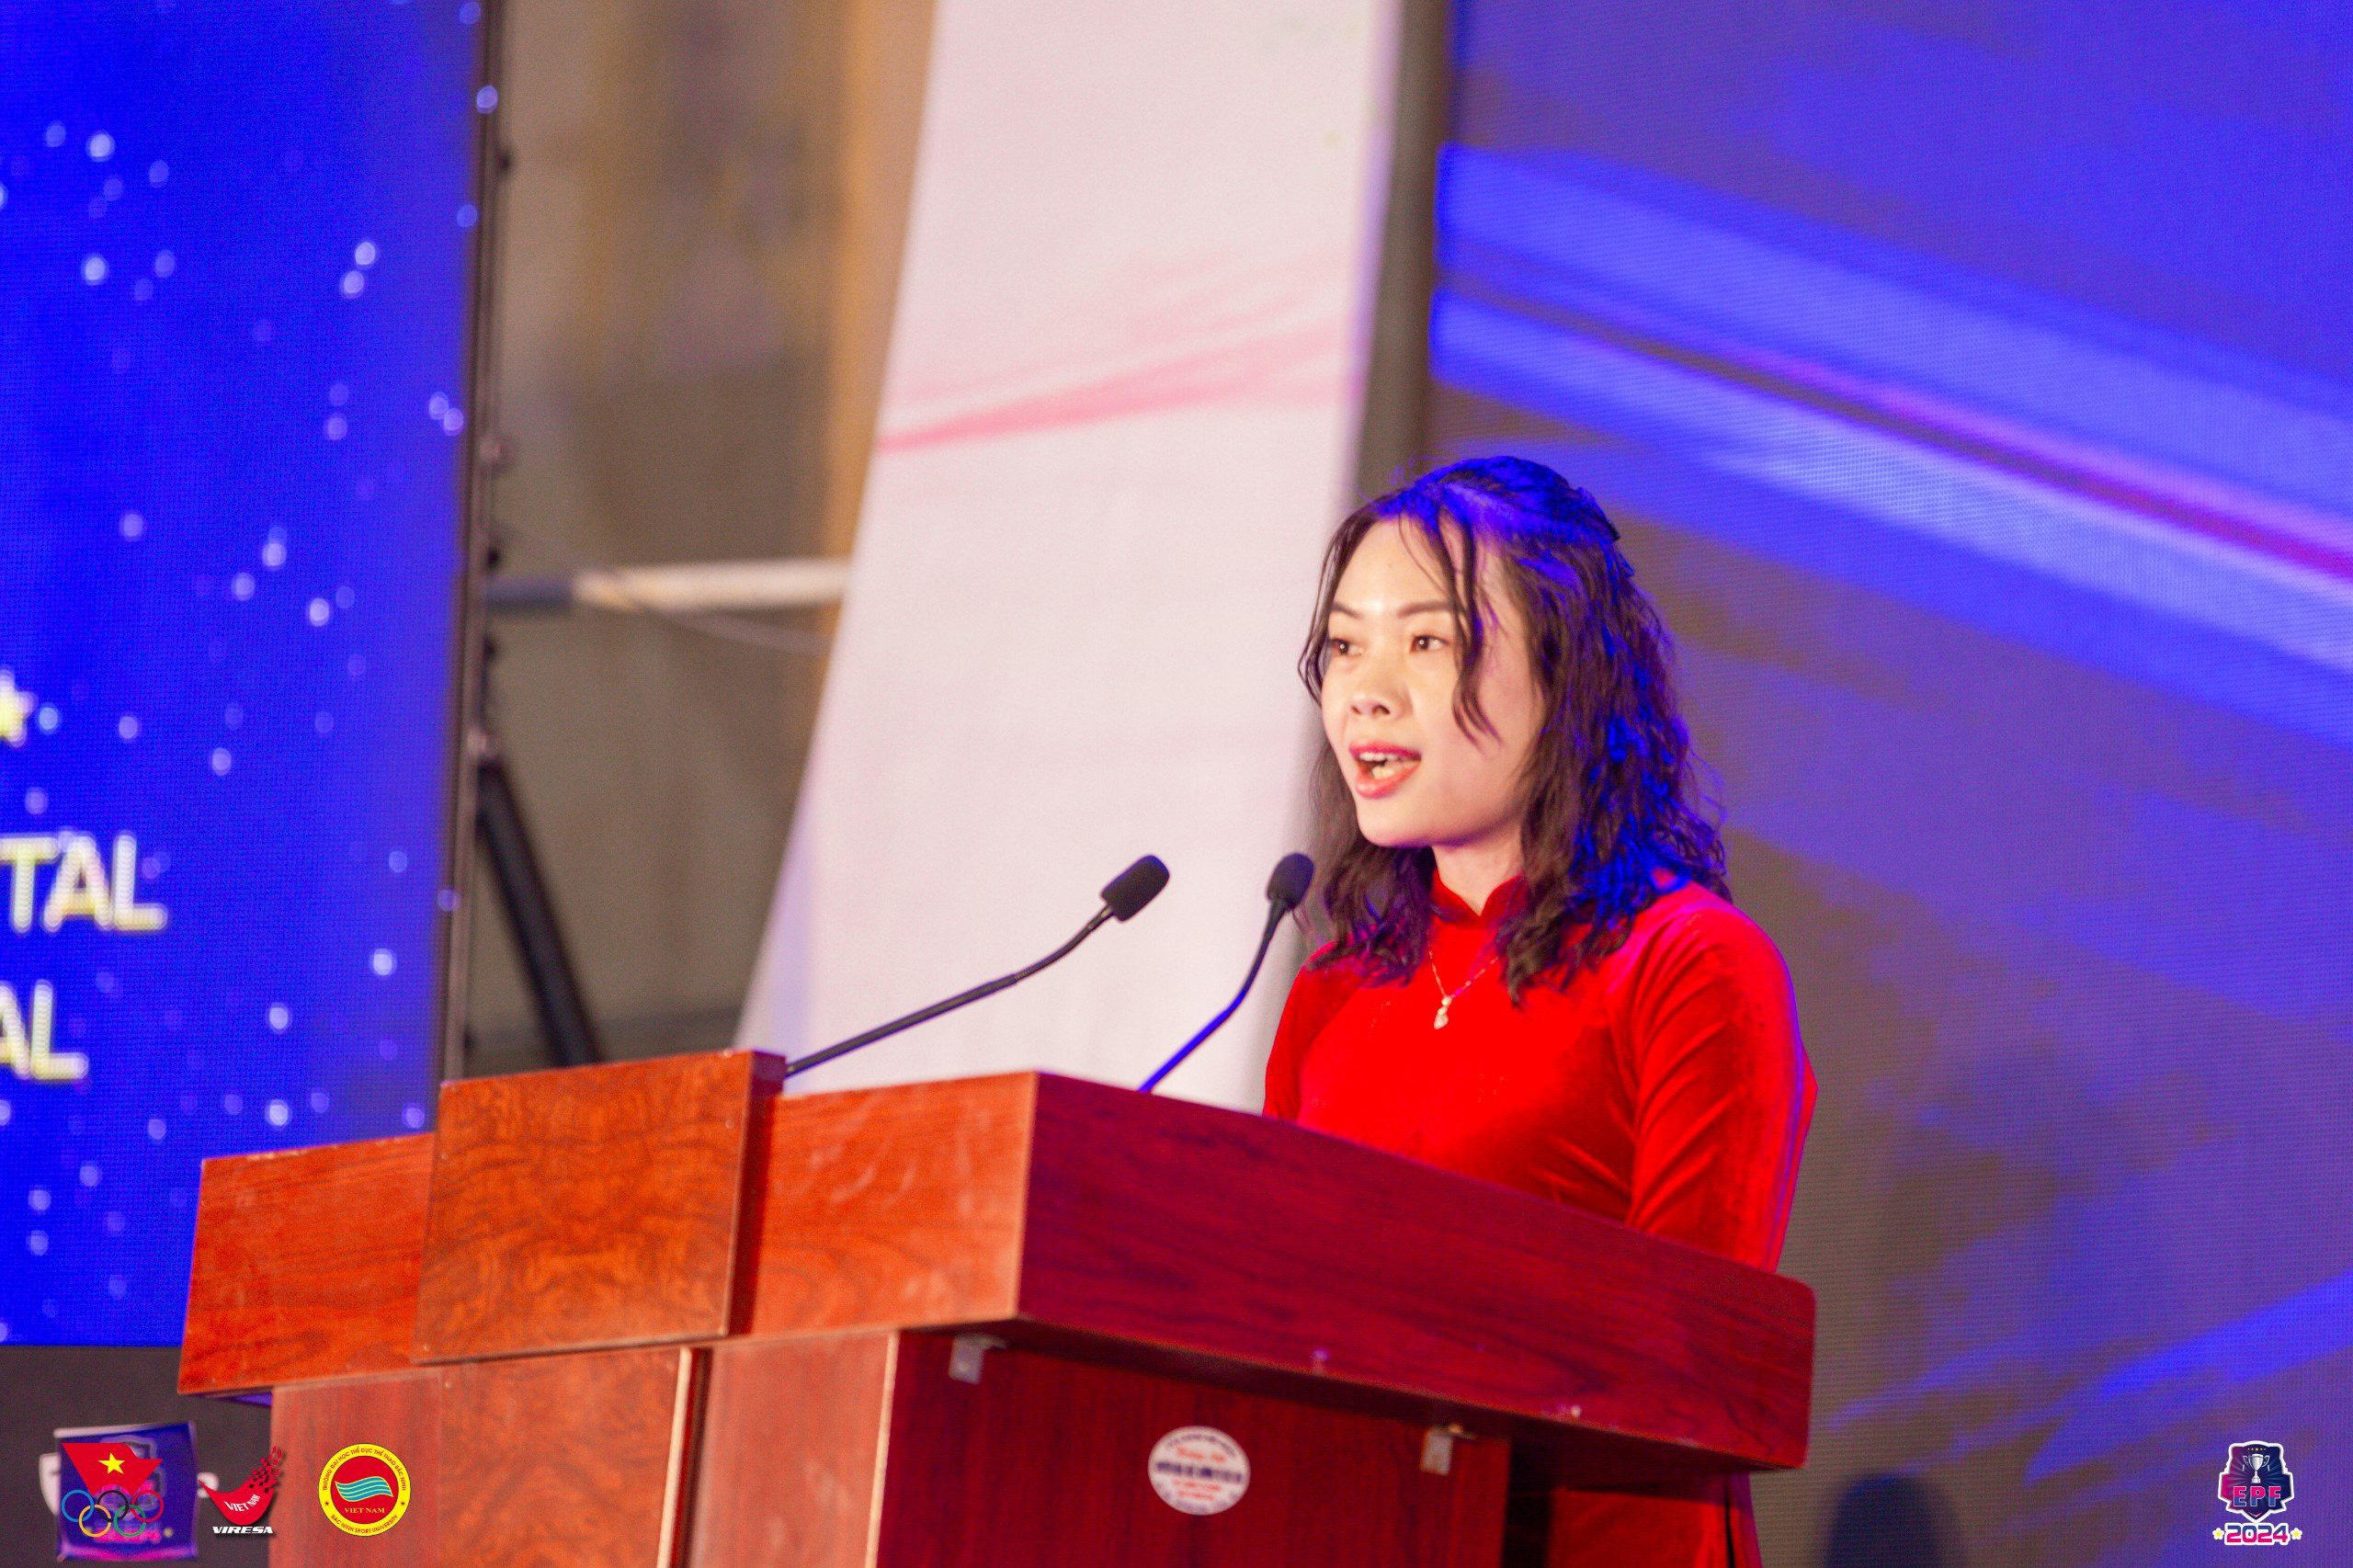 Bà Phạm Thị Vân – Phó Trưởng đại diện VP Miền Bắc Tổ chức Kỷ lục Việt Nam công bố quyết định xác lập Kỷ lục.